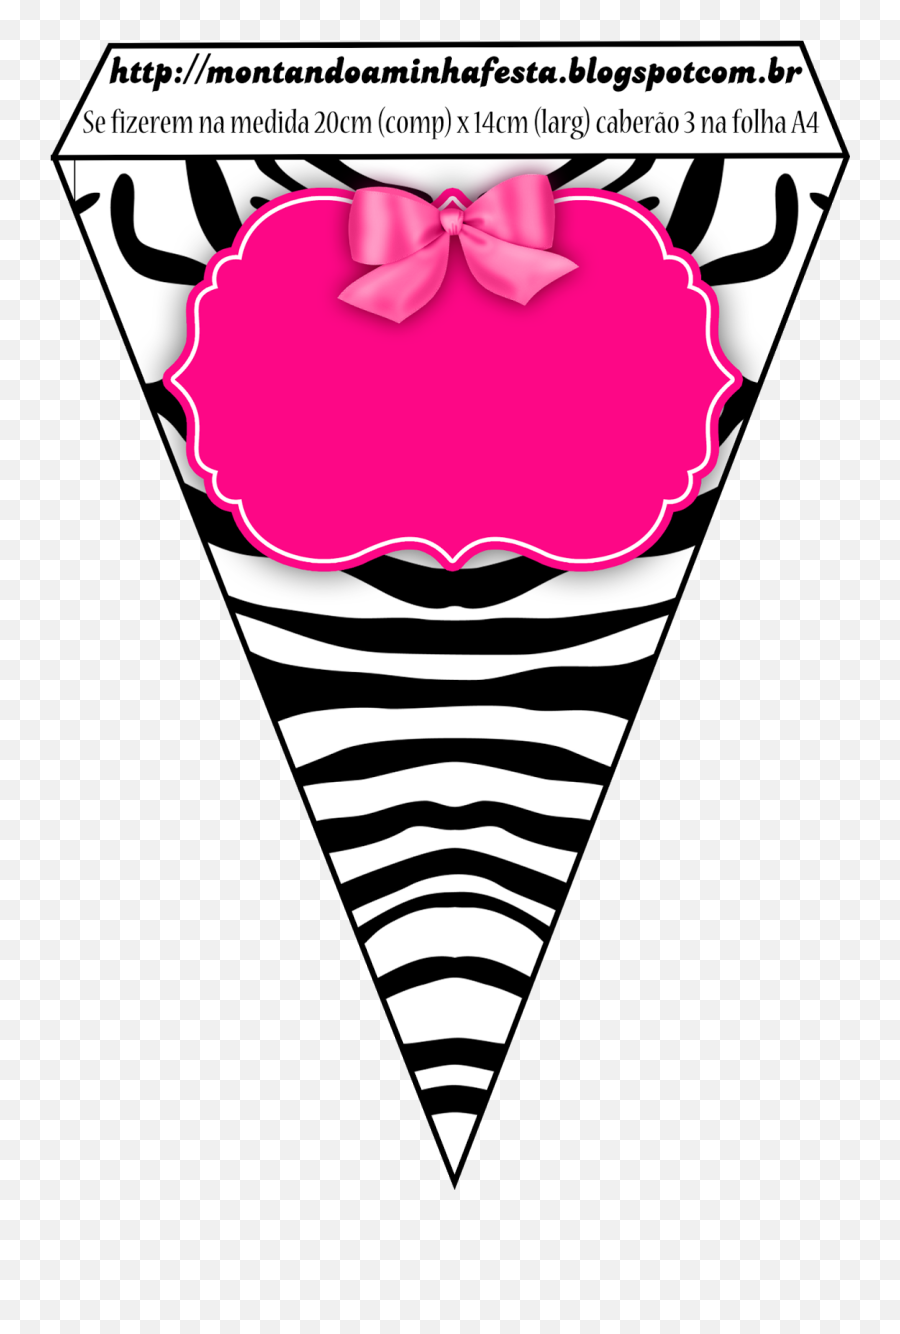 Zebra And Pink Free Party Printable Boxes And Invitations - Bandeirola Rosa E Preto Emoji,Fazendo A Minha Festa Emoji